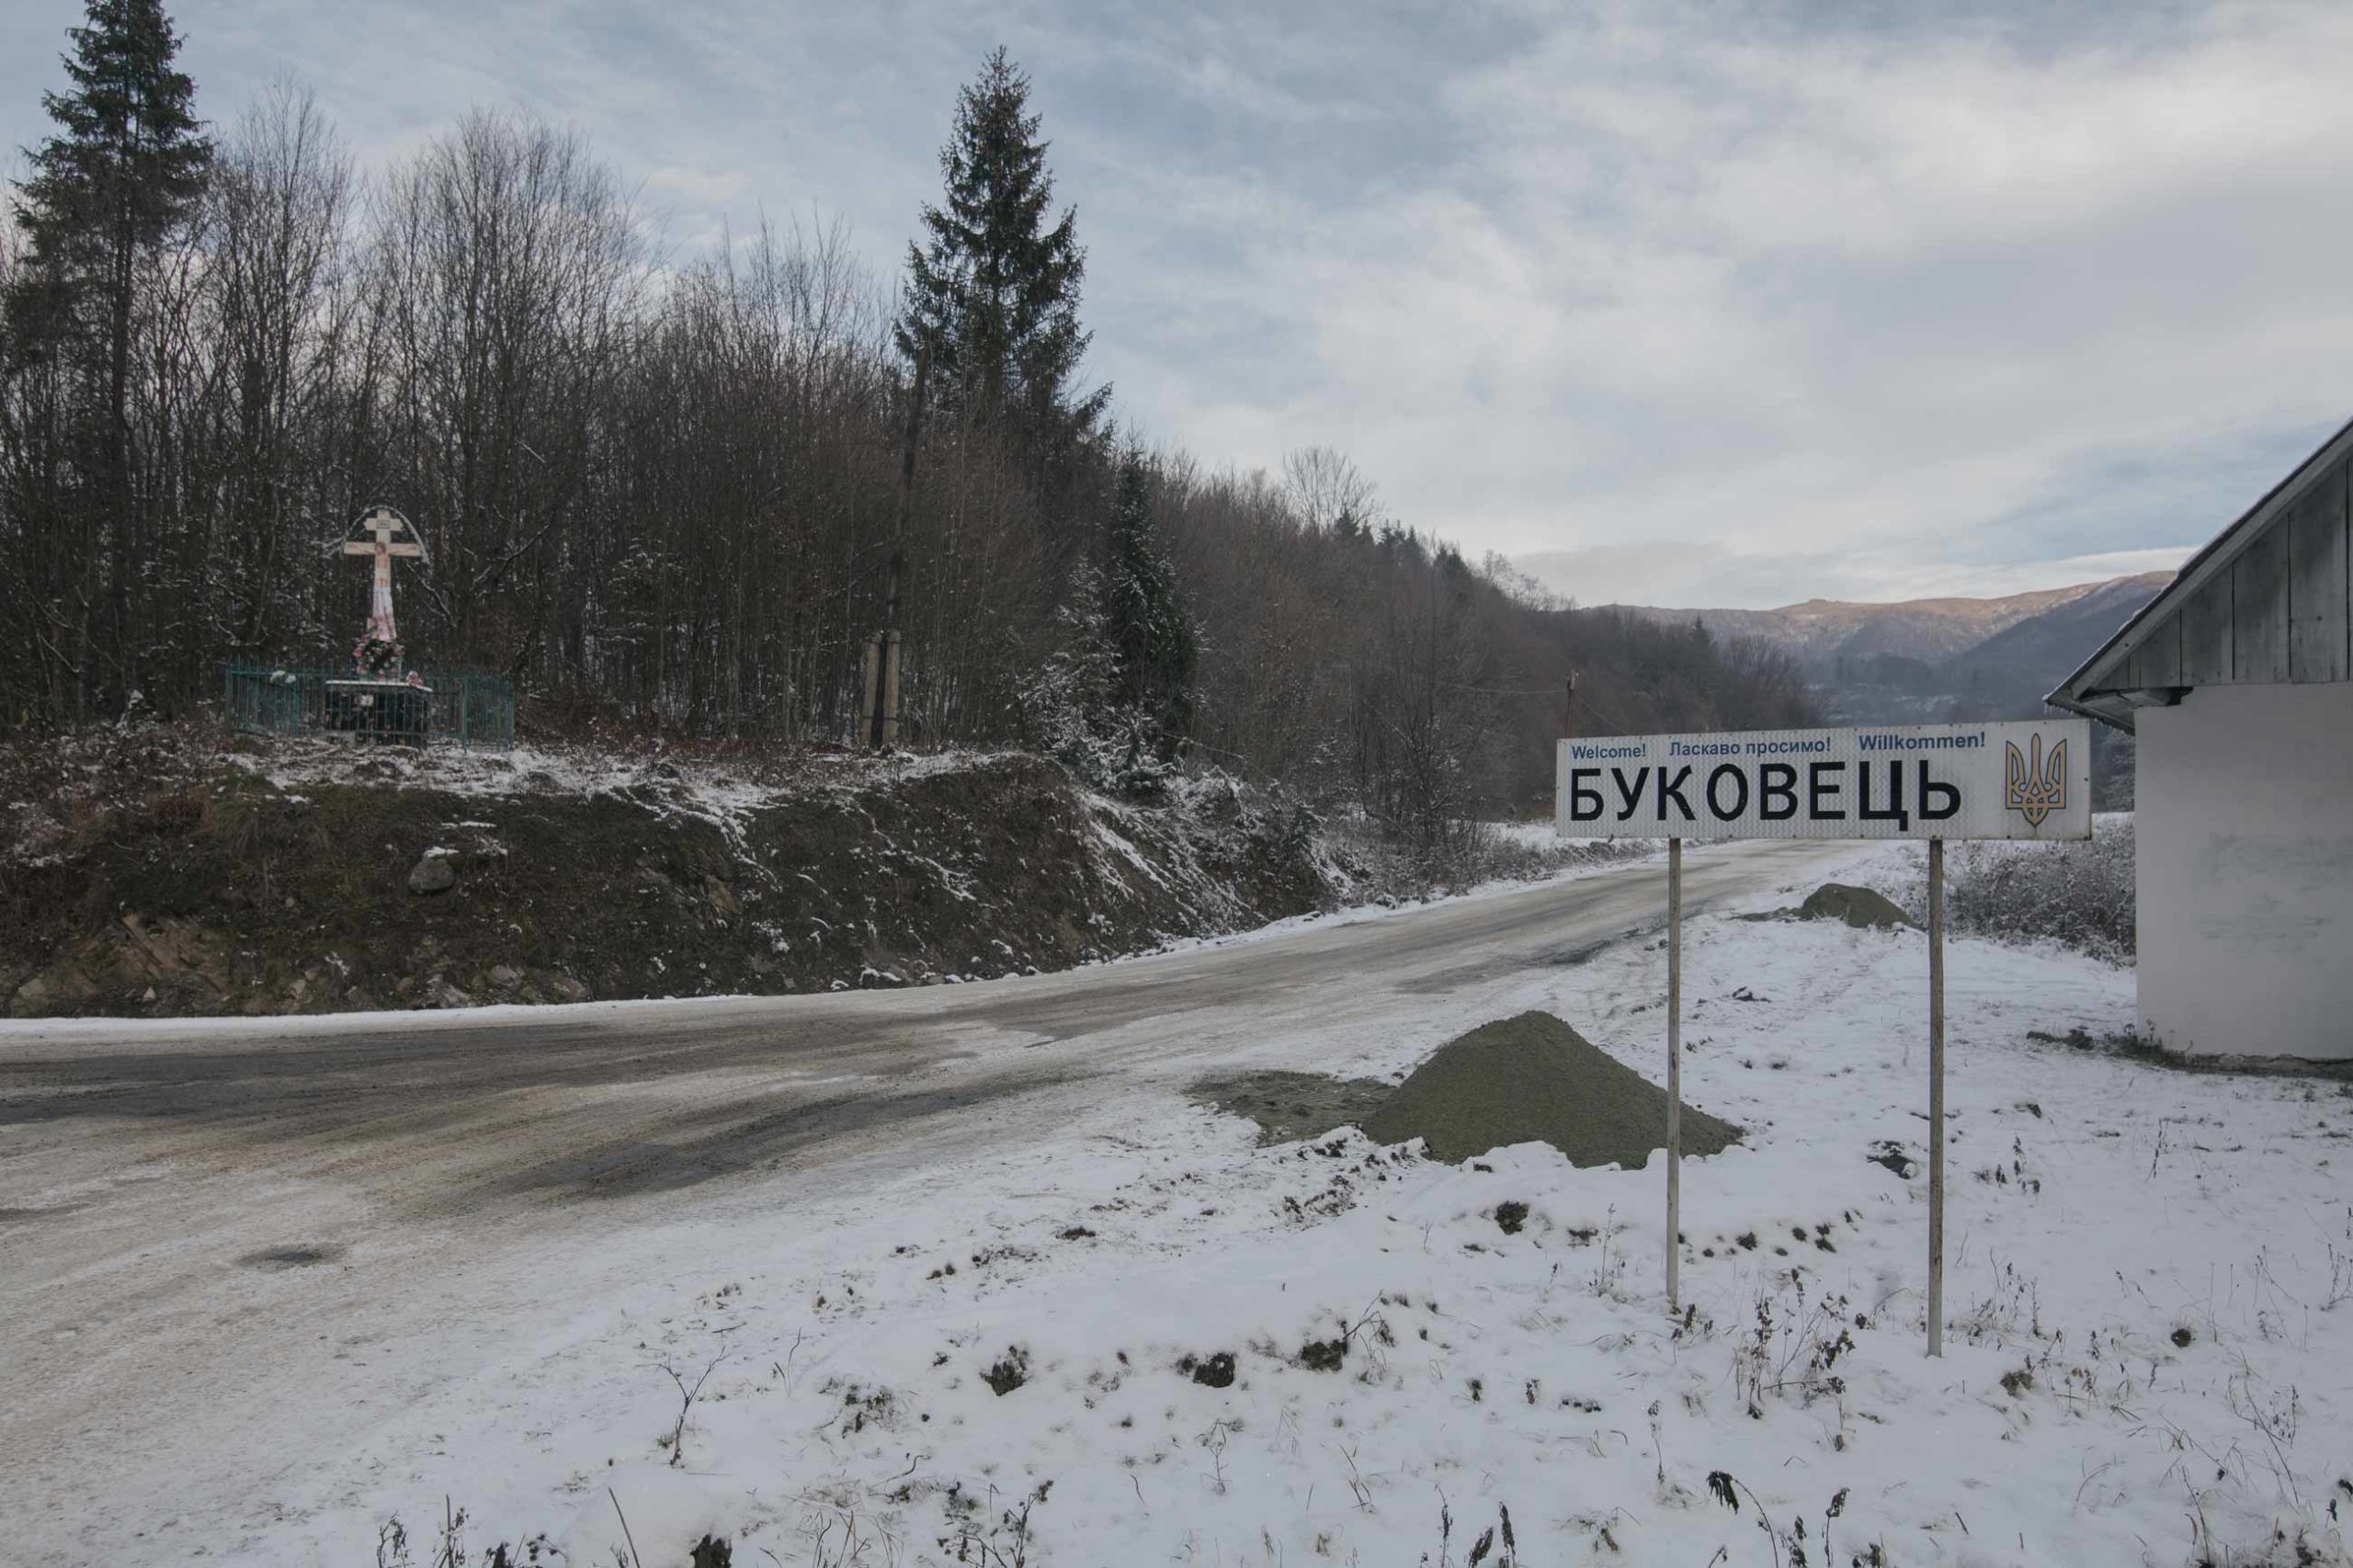 Суд визнав незаконною діяльність Укргазвидобування в селі Буковець на Прикарпатті